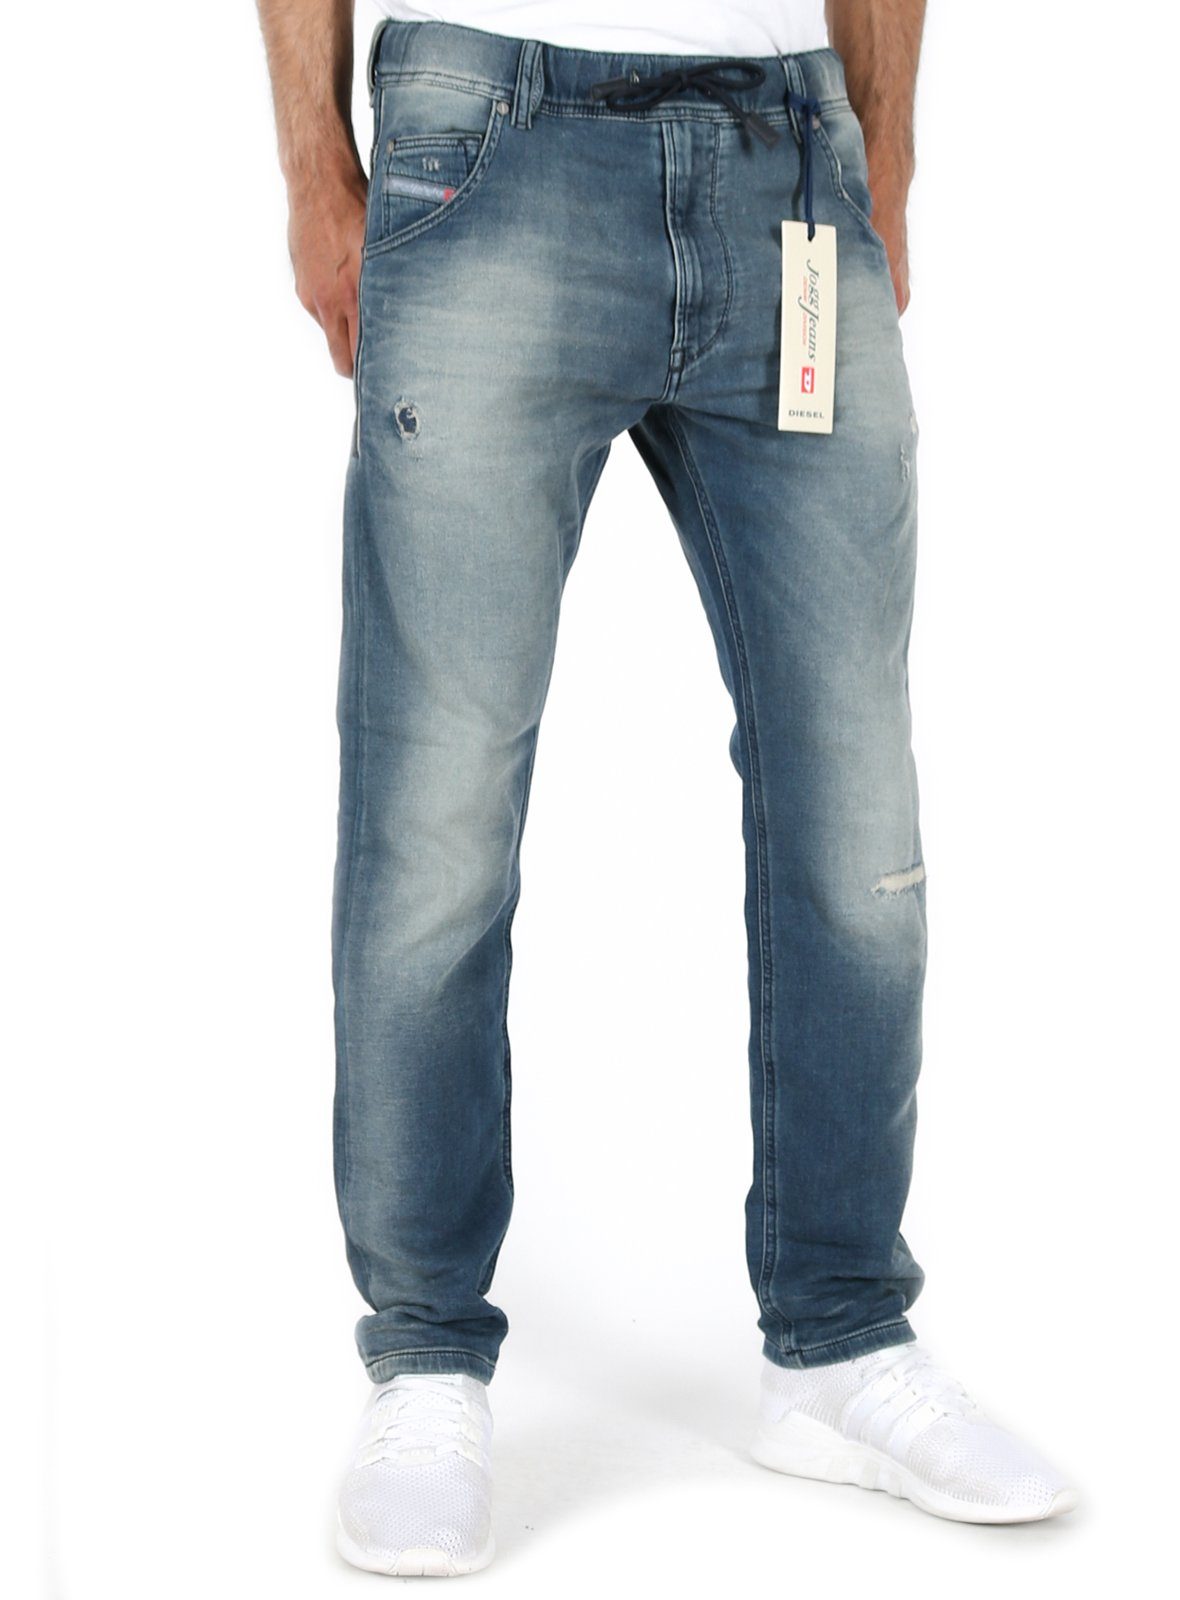 عين خلفية كلمة diesel jogg jeans herren - mybooksolutions.com